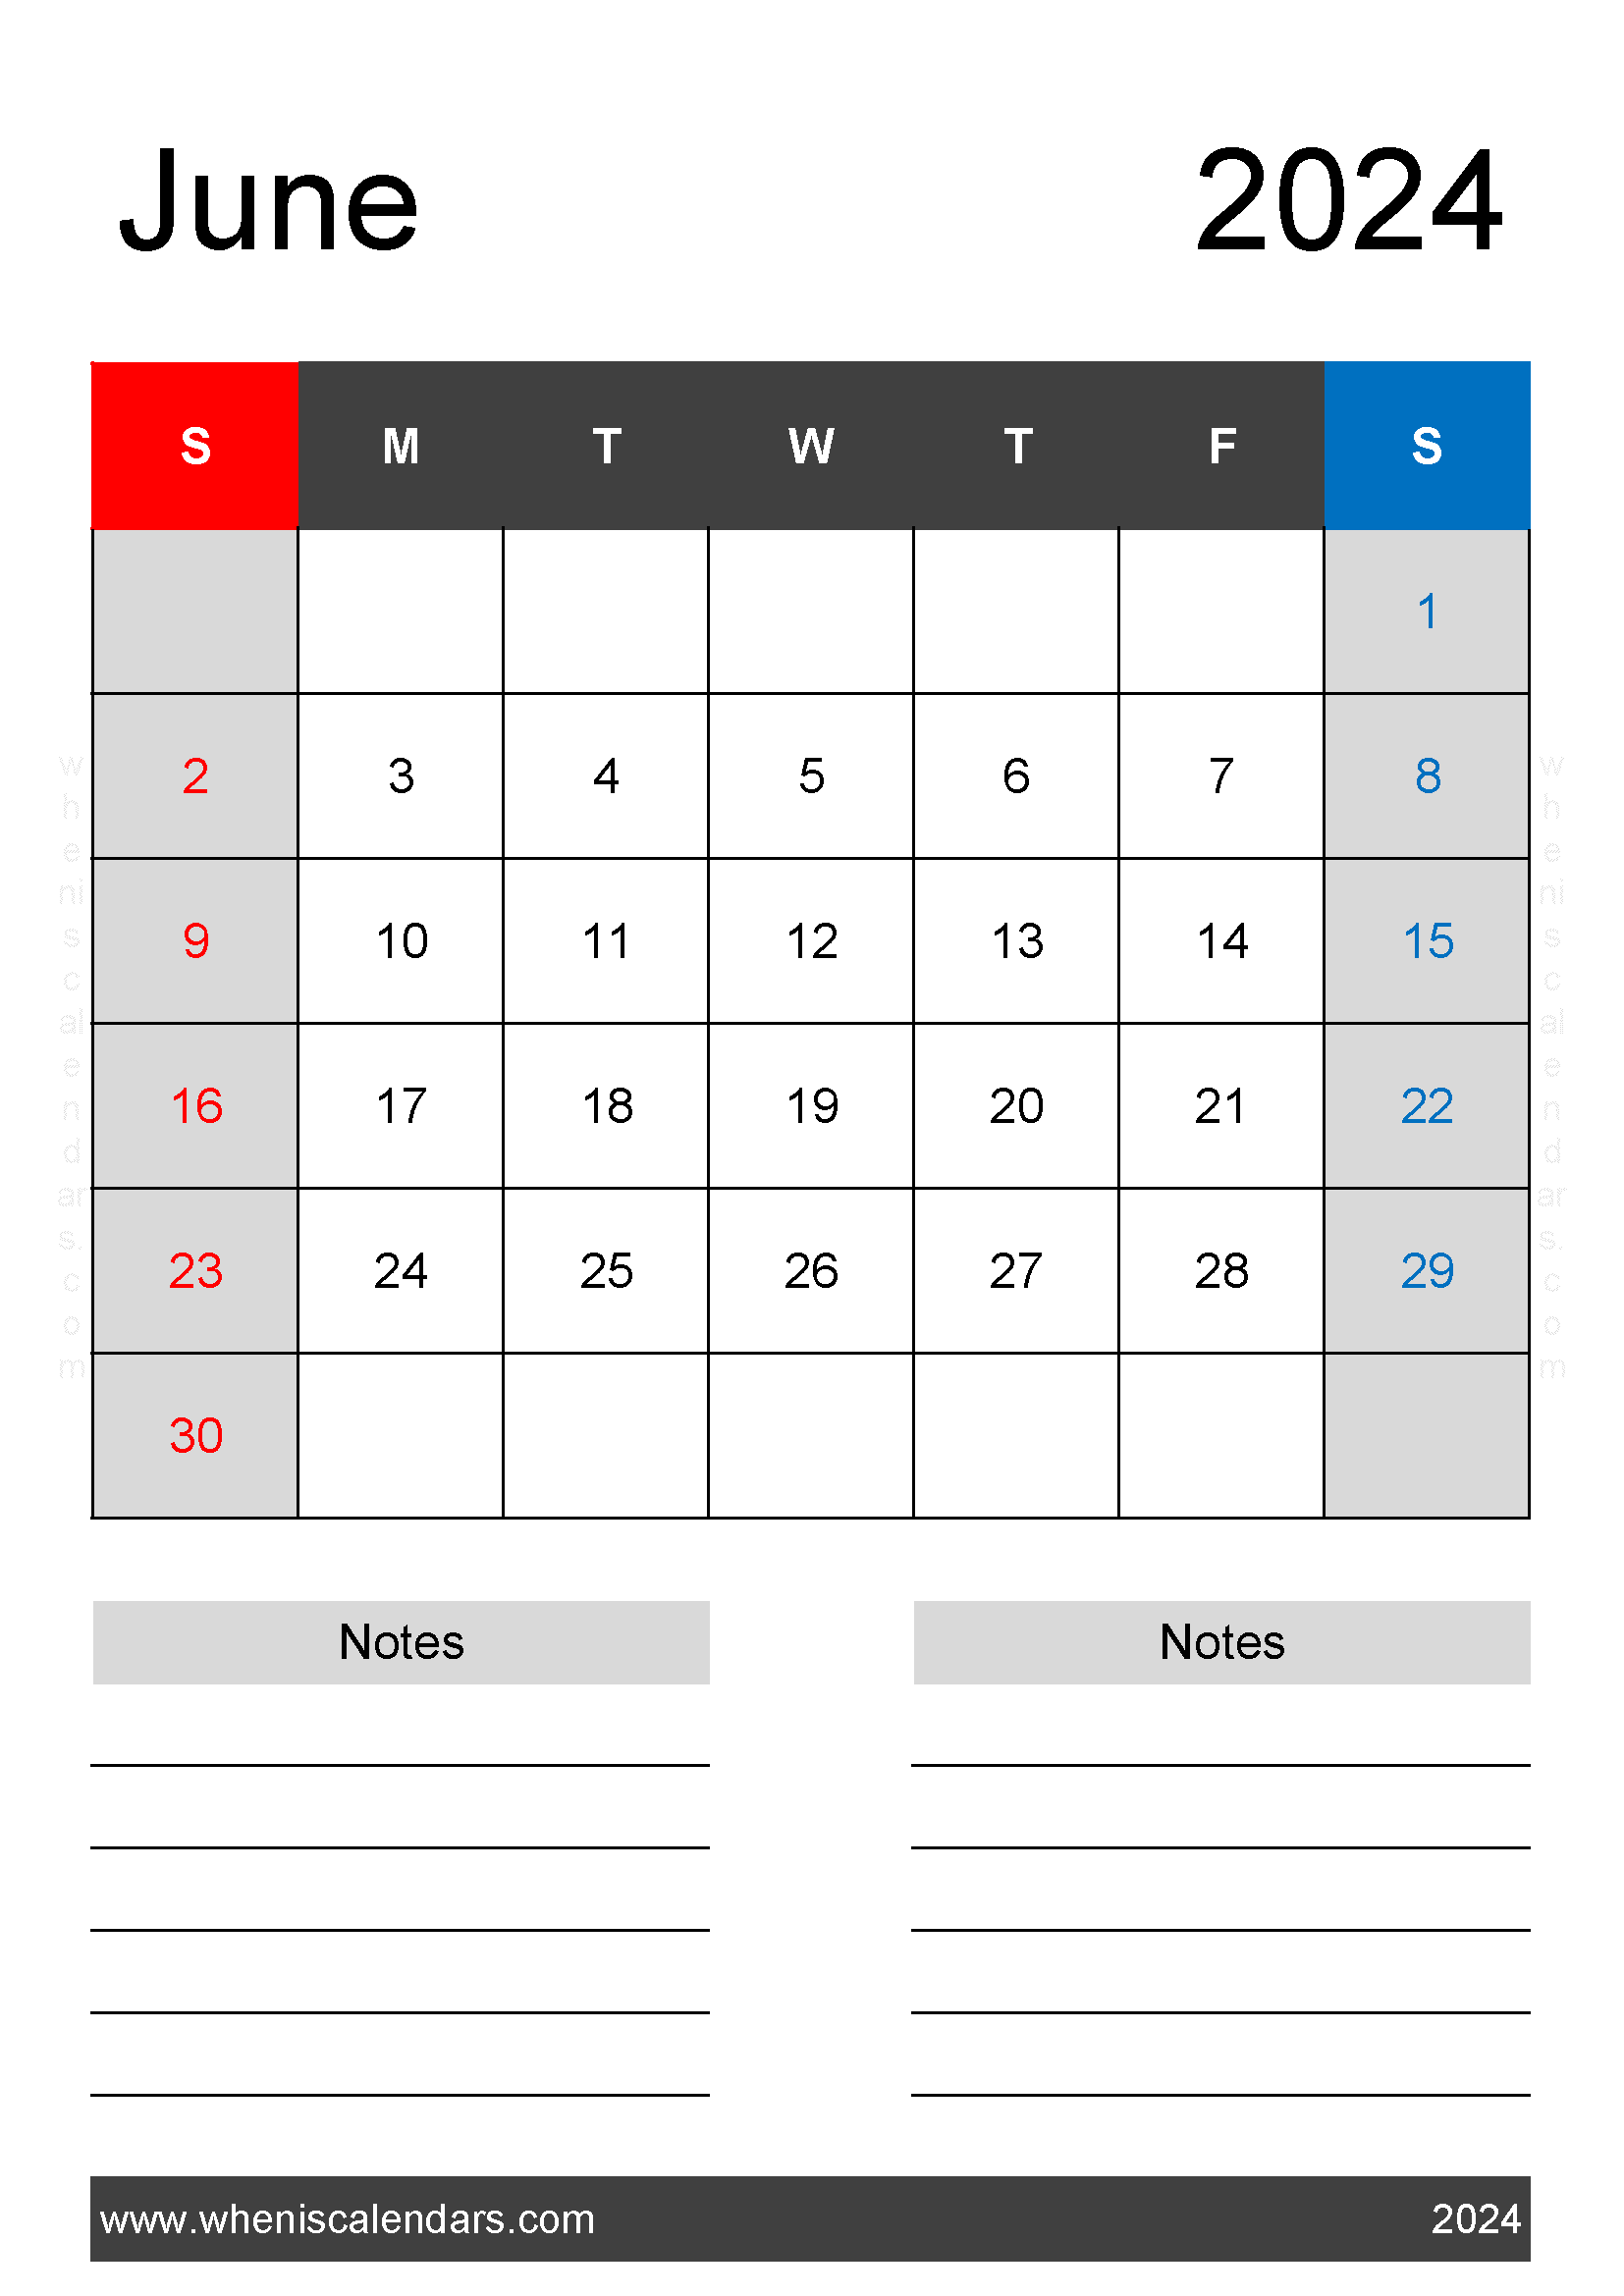 June weekly Calendar 2024 Printable Monthly Calendar